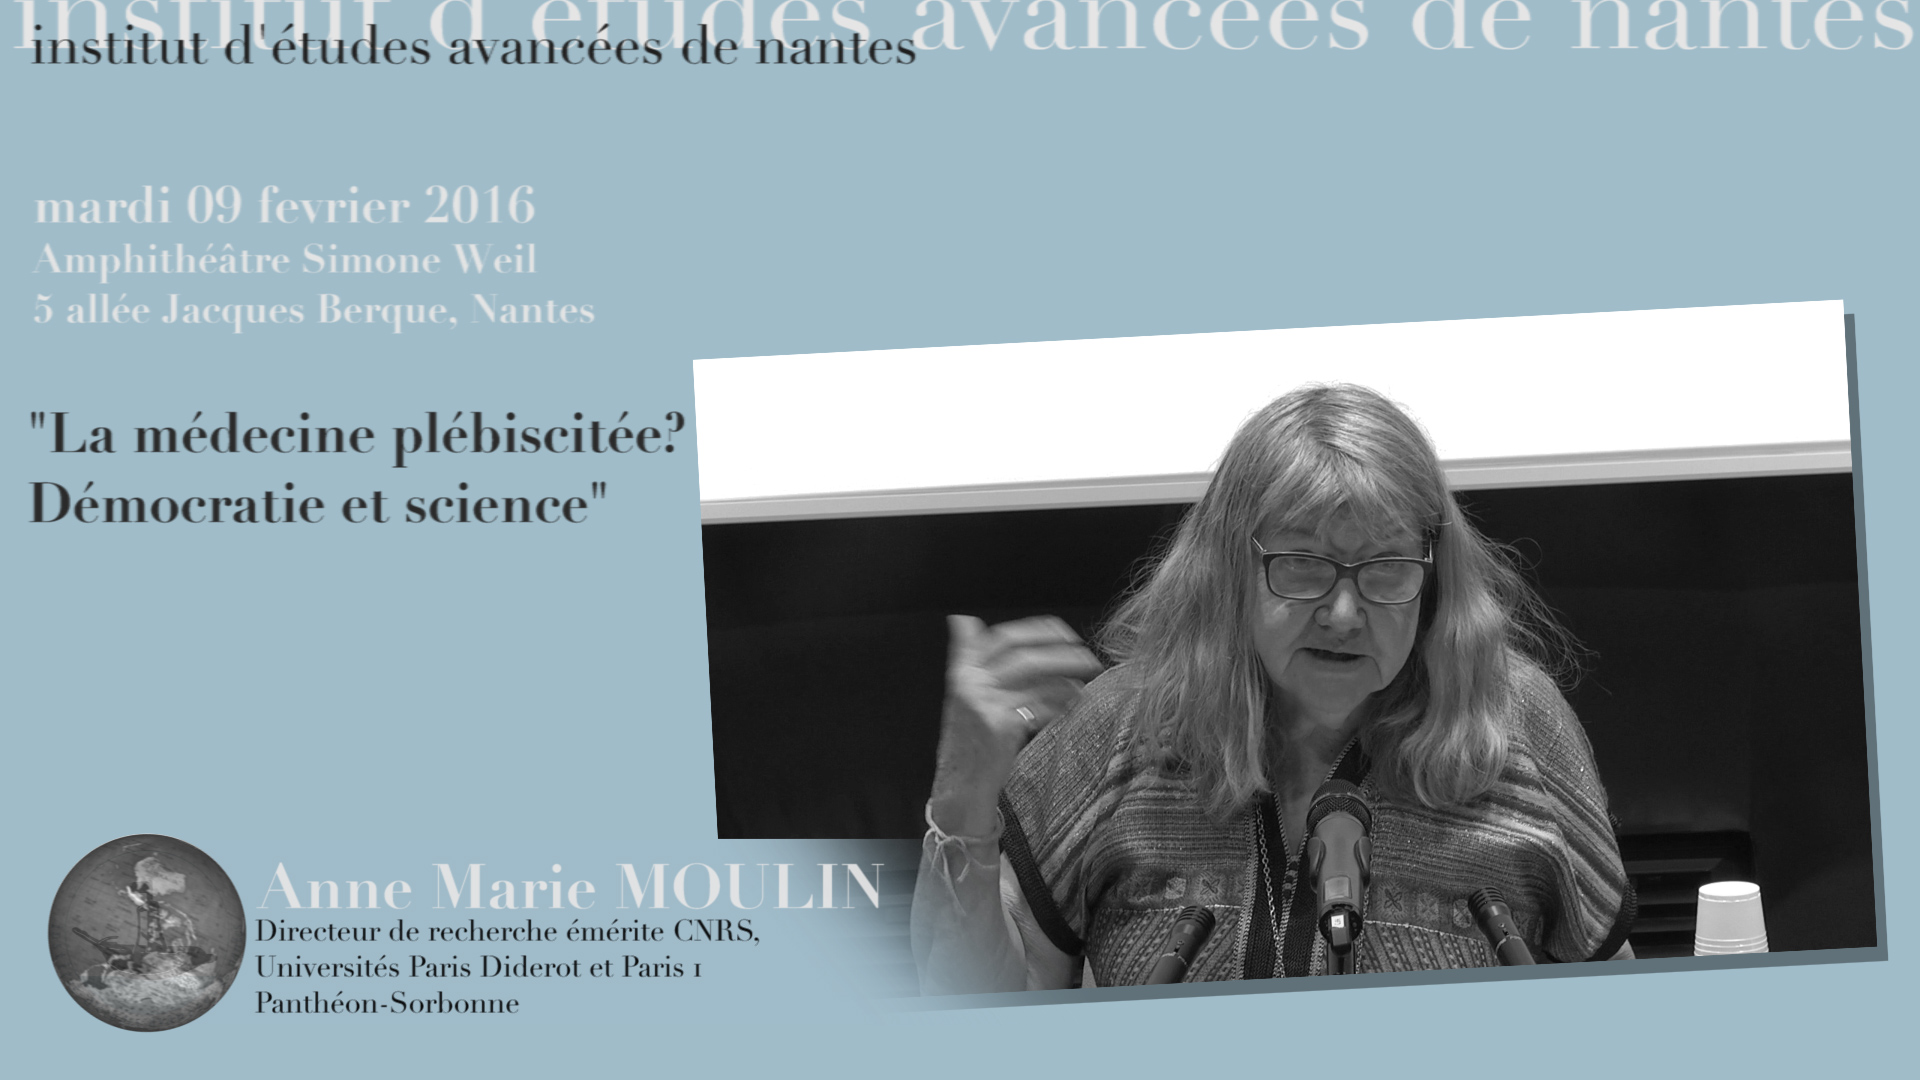 Anne Marie Moulin : "La médecine plébiscitée? Démocratie et science"